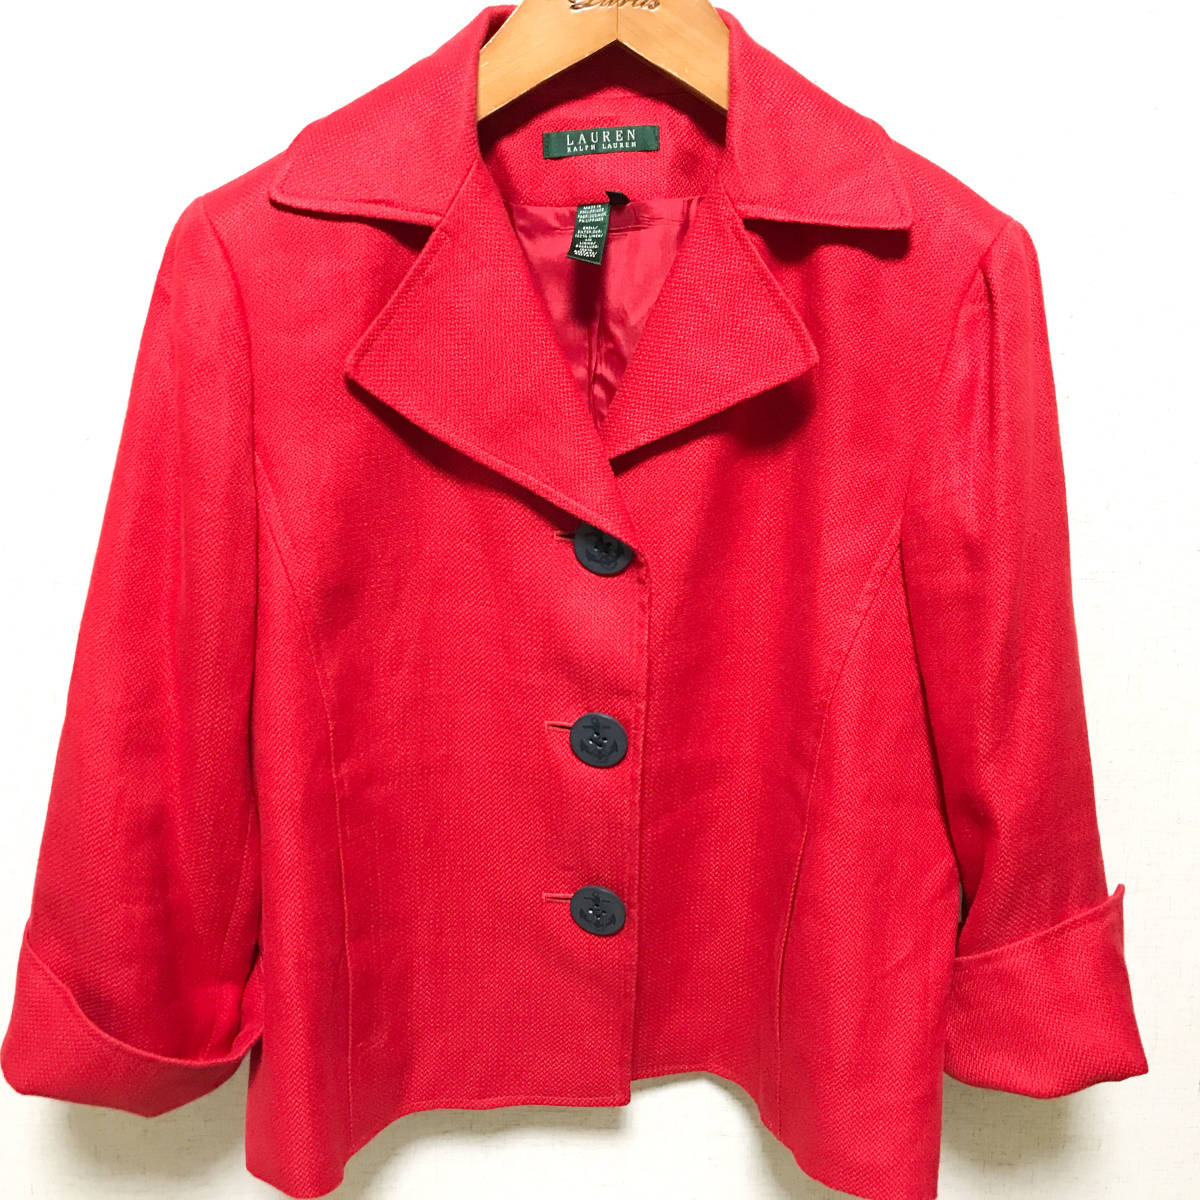 LAUREN RALPH LAUREN  короткий    пальто   пиджак   женский 10  красный   Ralph Lauren  HAF2110-10-S8-M15